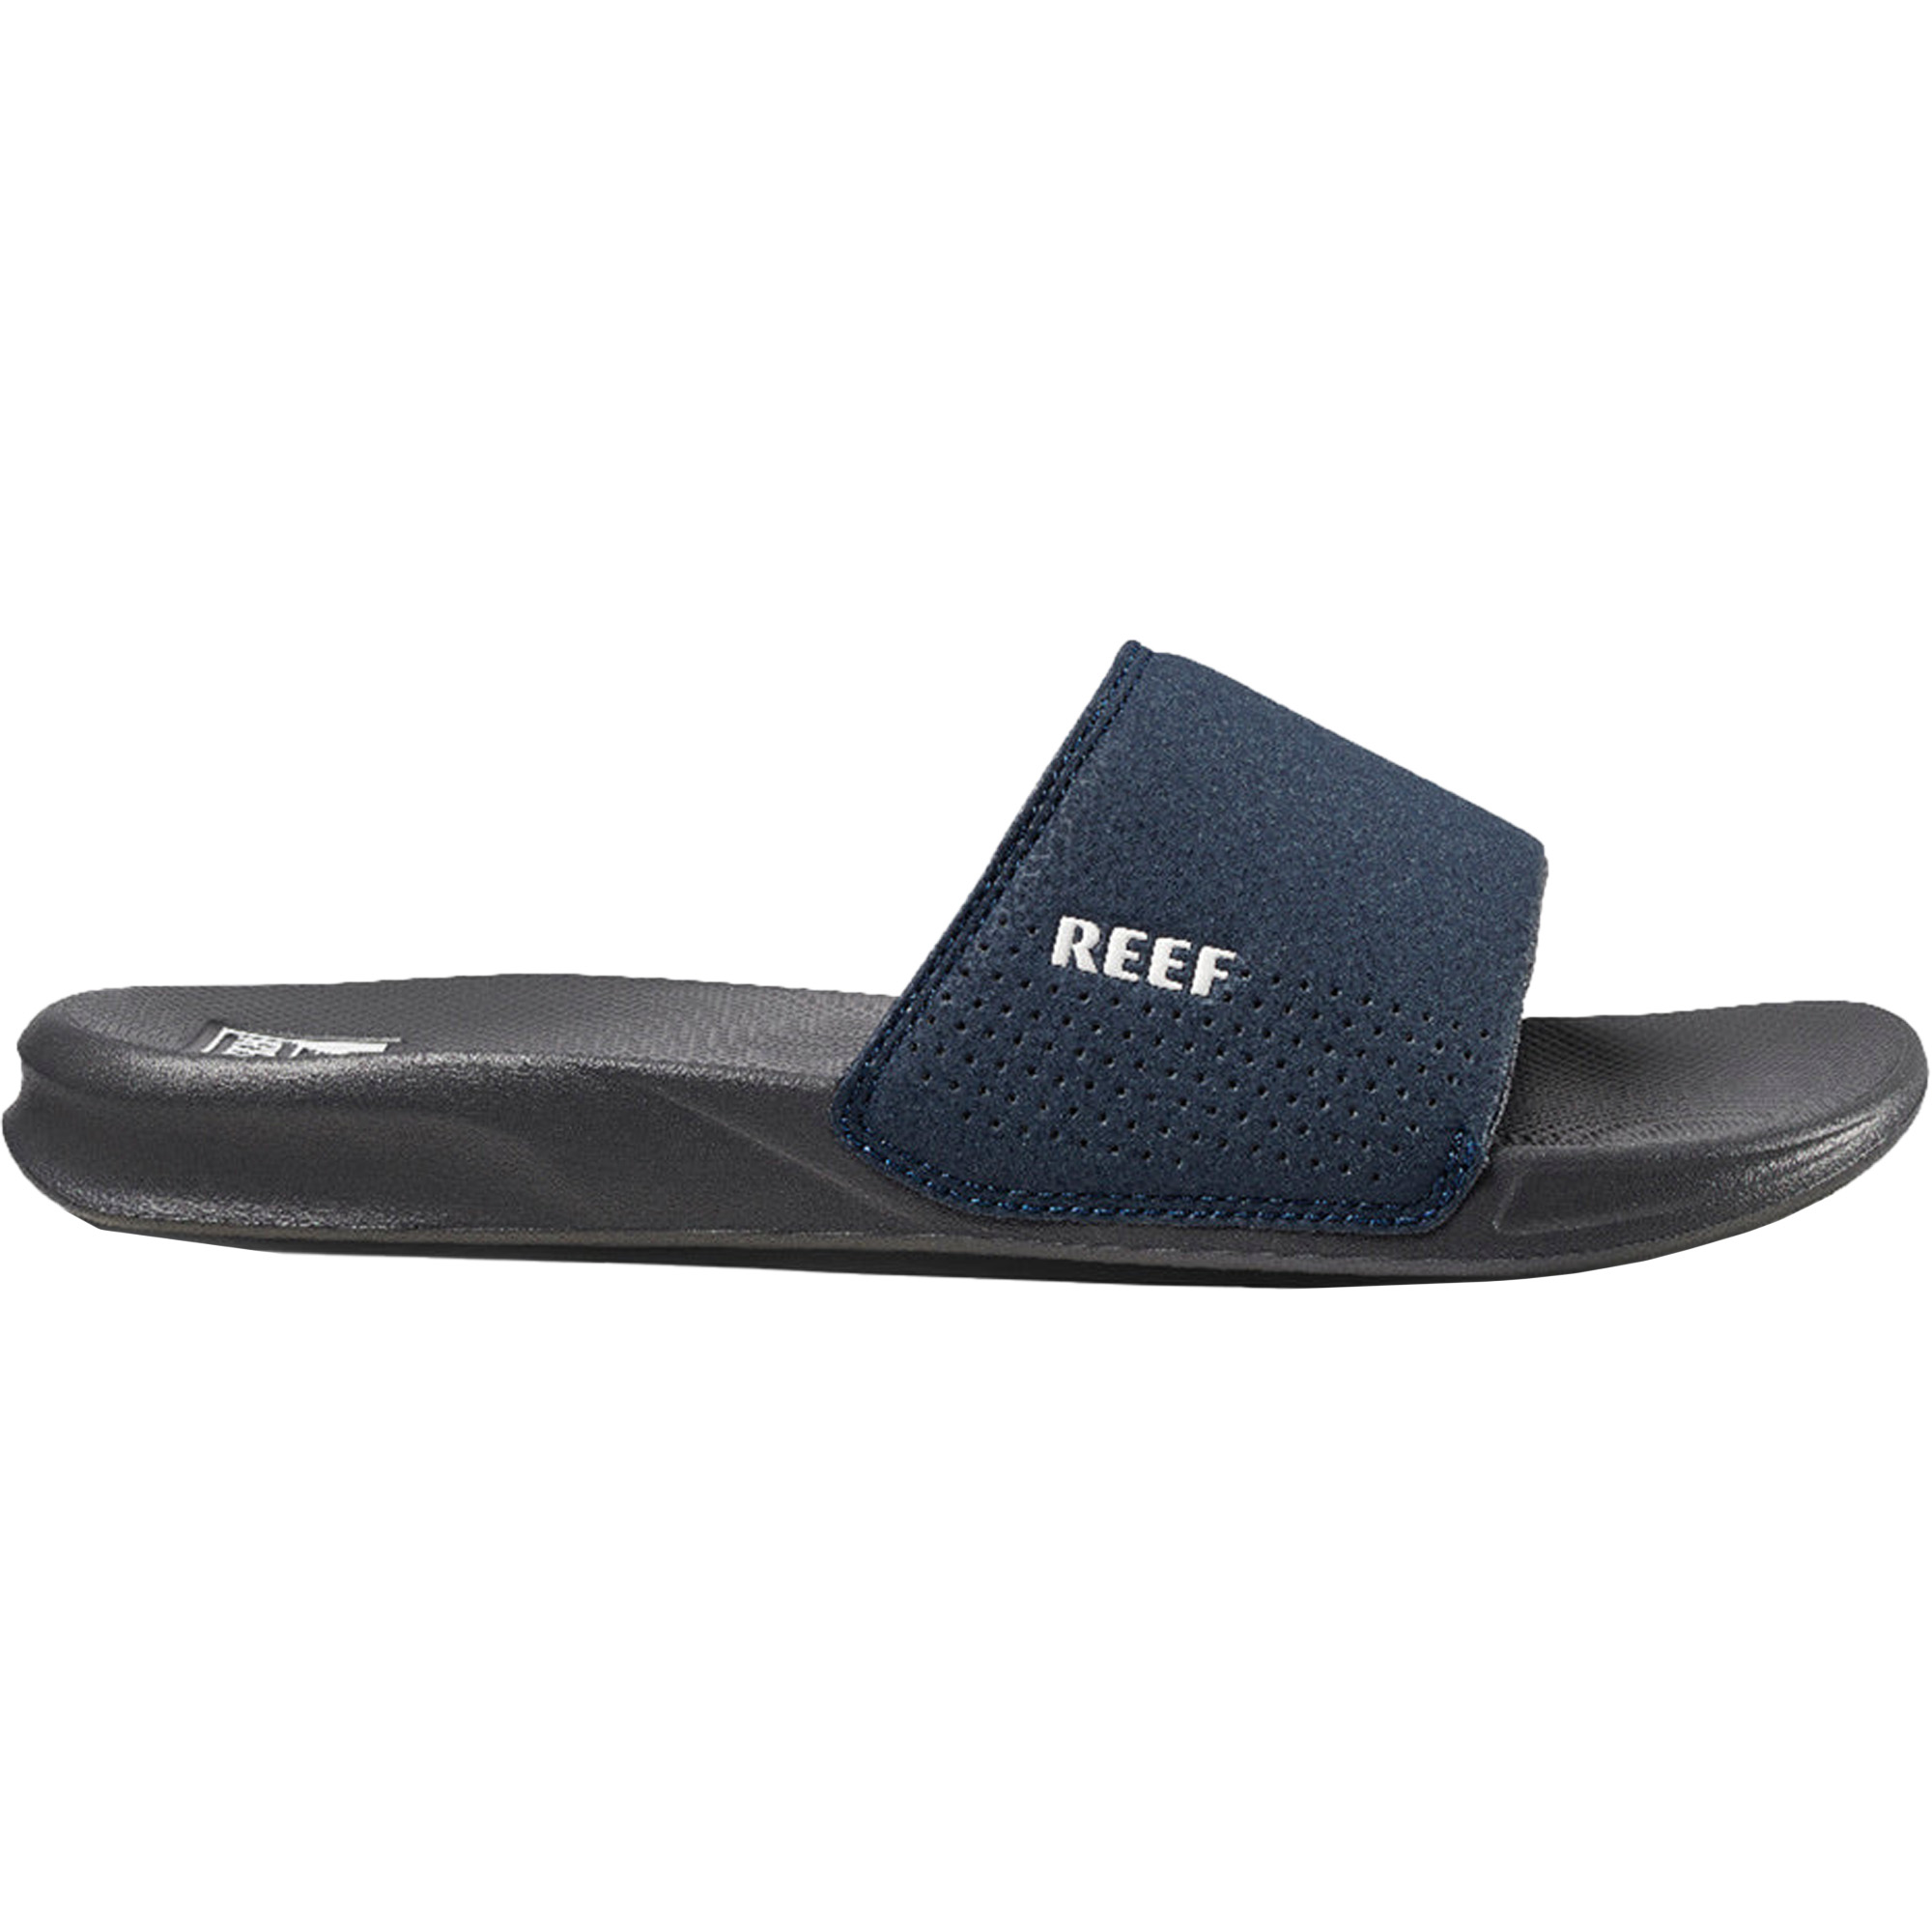 Reef One Slide Men's Flip Flops